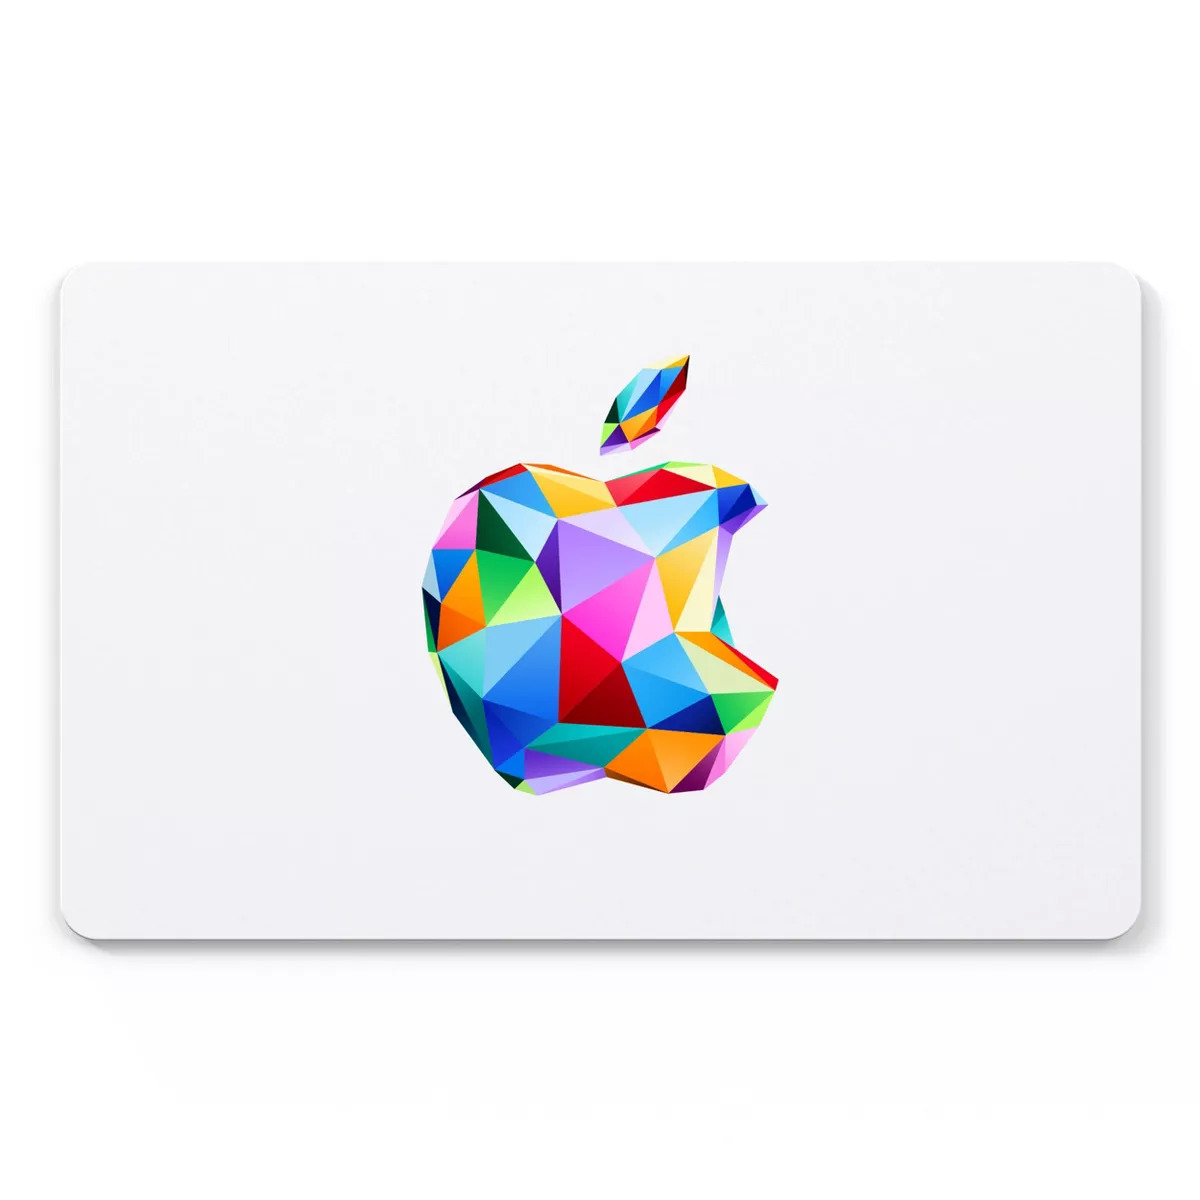 Target Black Friday Apple Gift Card Offer: Spend $100, Get Bonus